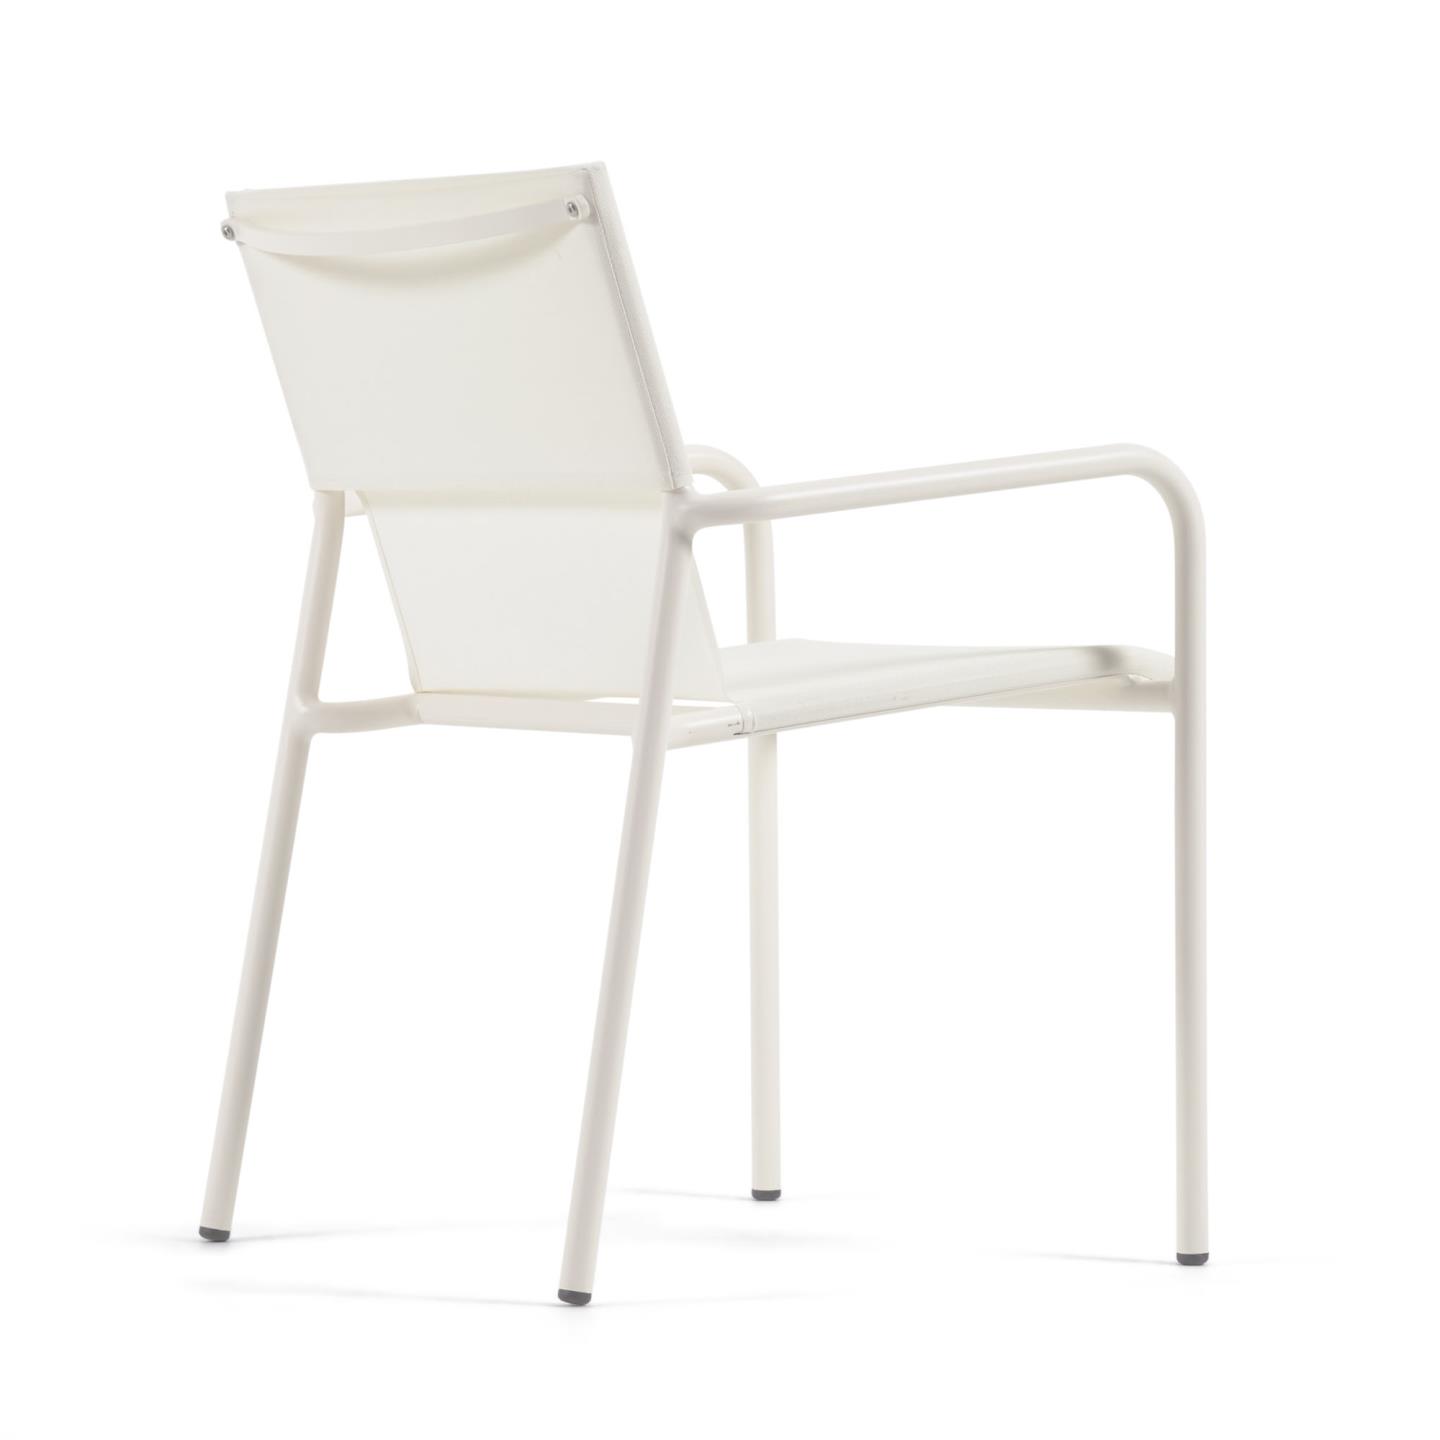 Zaltana Алюминиевый стул для улицы с матовой белой окраской